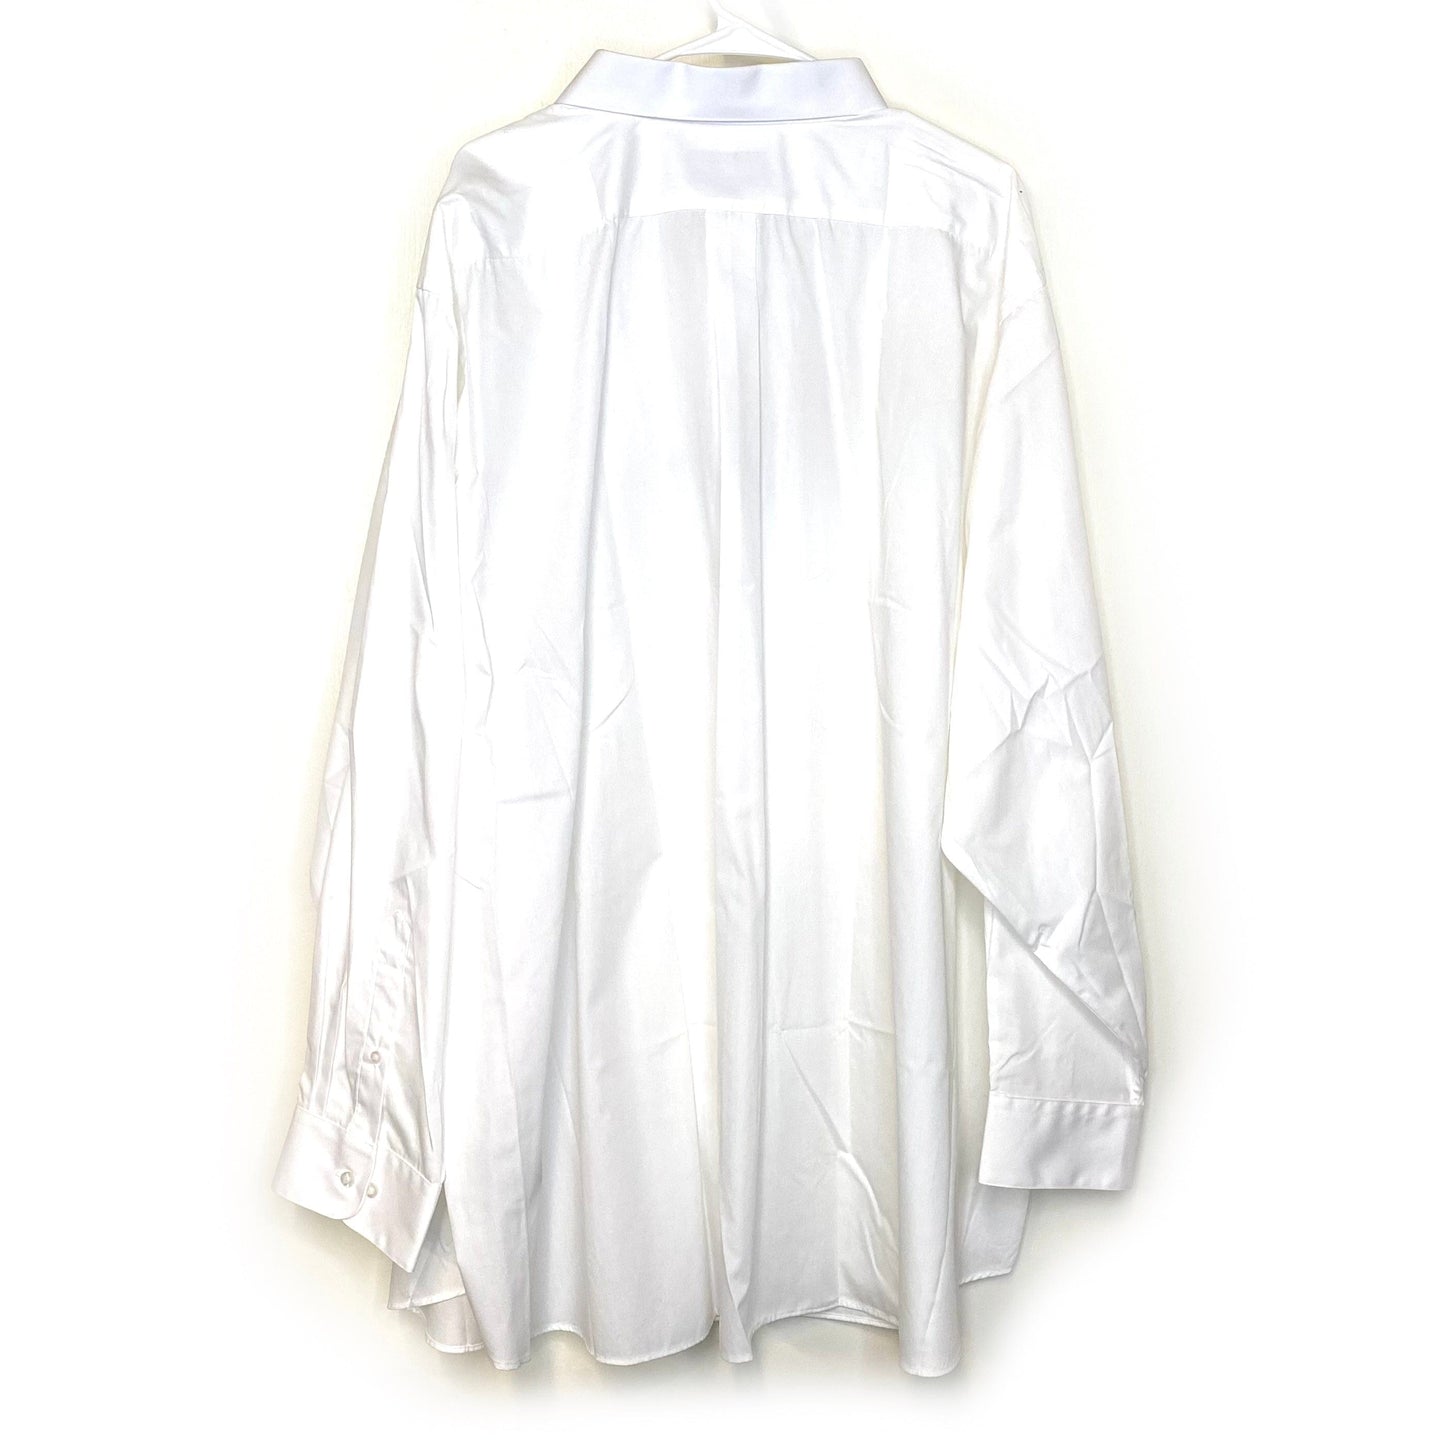 Alexander Julian Mens Size 5X White Button-Up Dress Shirt L/s NWT